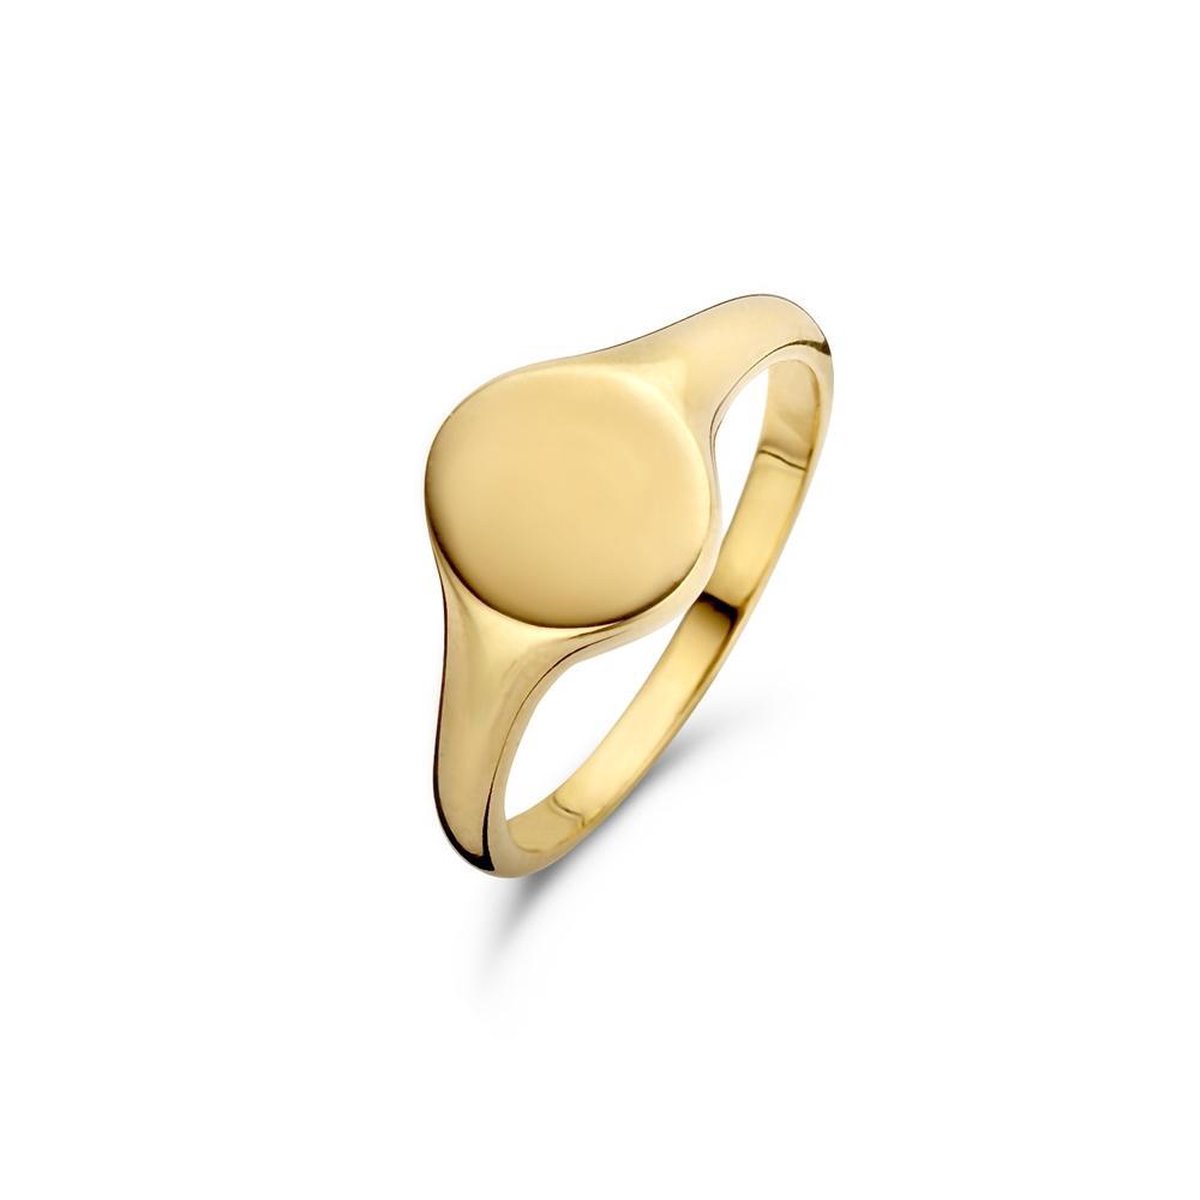 New Bling Zilveren Zegel Ring 9NB 0270 50 - Maat 50 - 9 x 20 mm - Goudkleurig